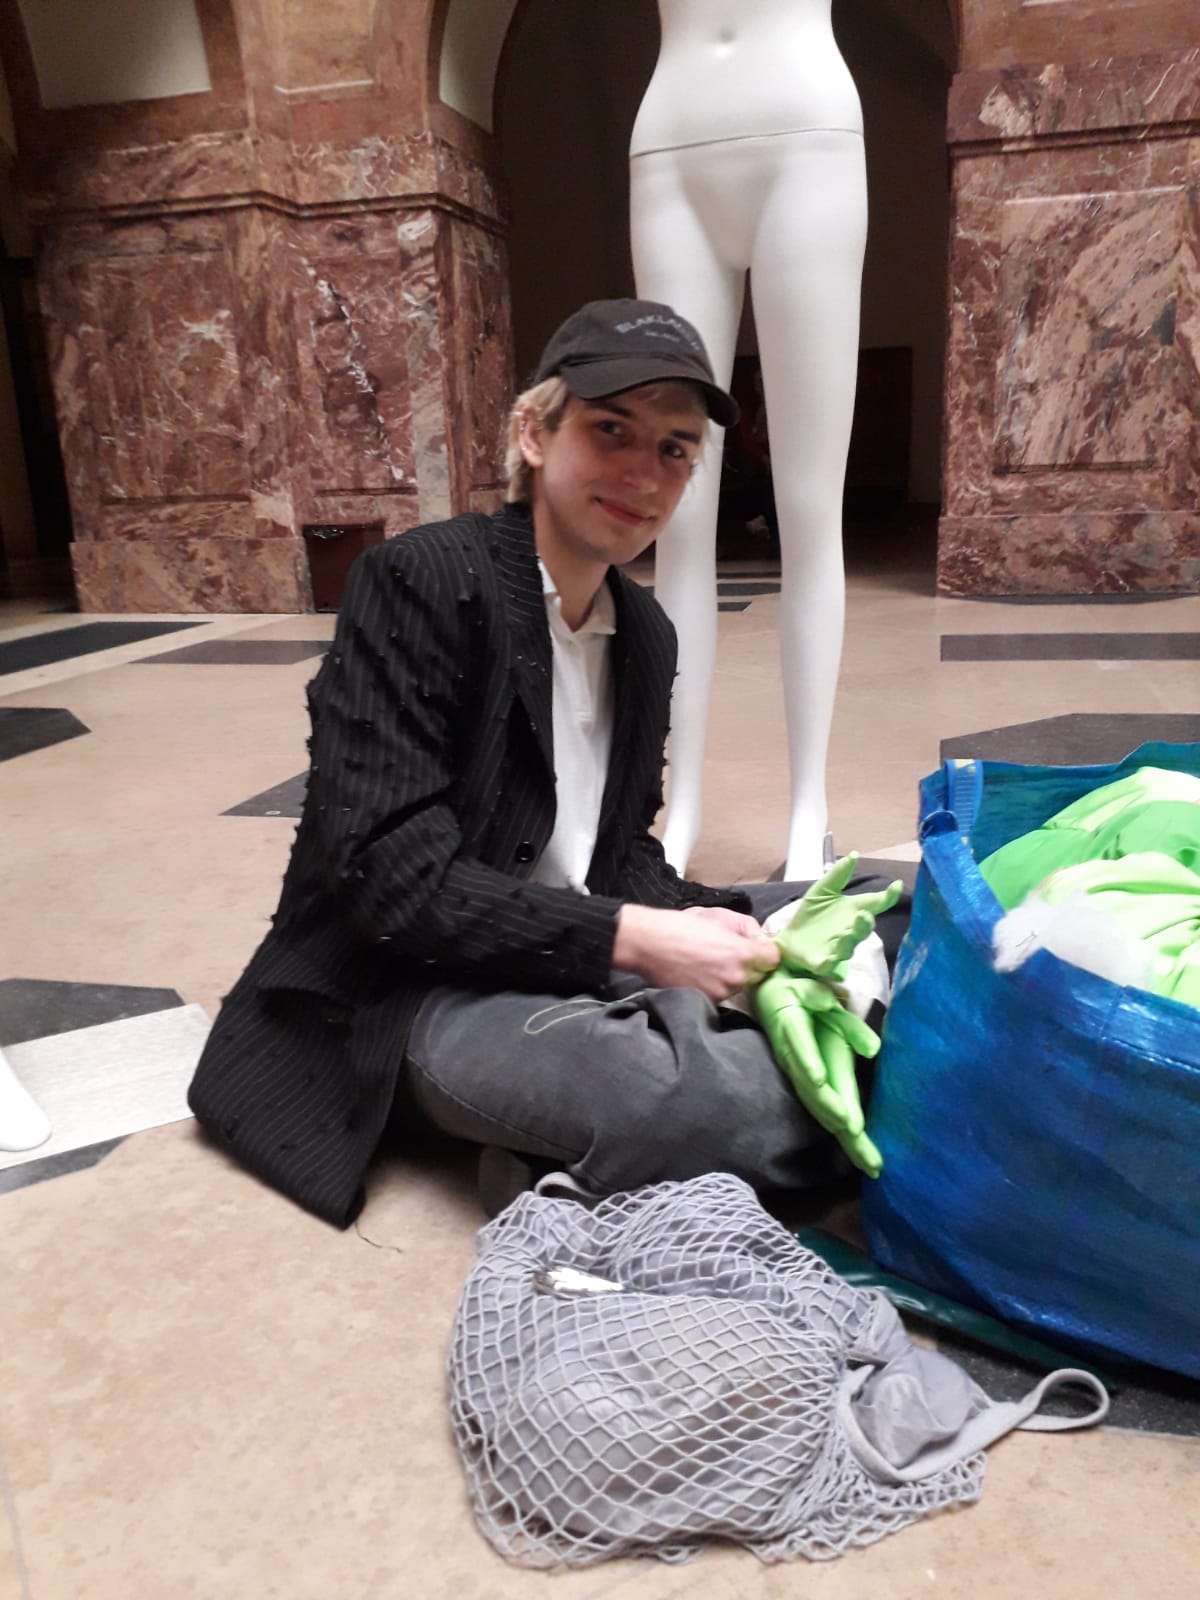 Młoda osoba siedzi po turecku w holu Collegium Maius, wyciąga tkaniny z toreb, patrzy w obiektyw. Za nią stoi nagi manekin.